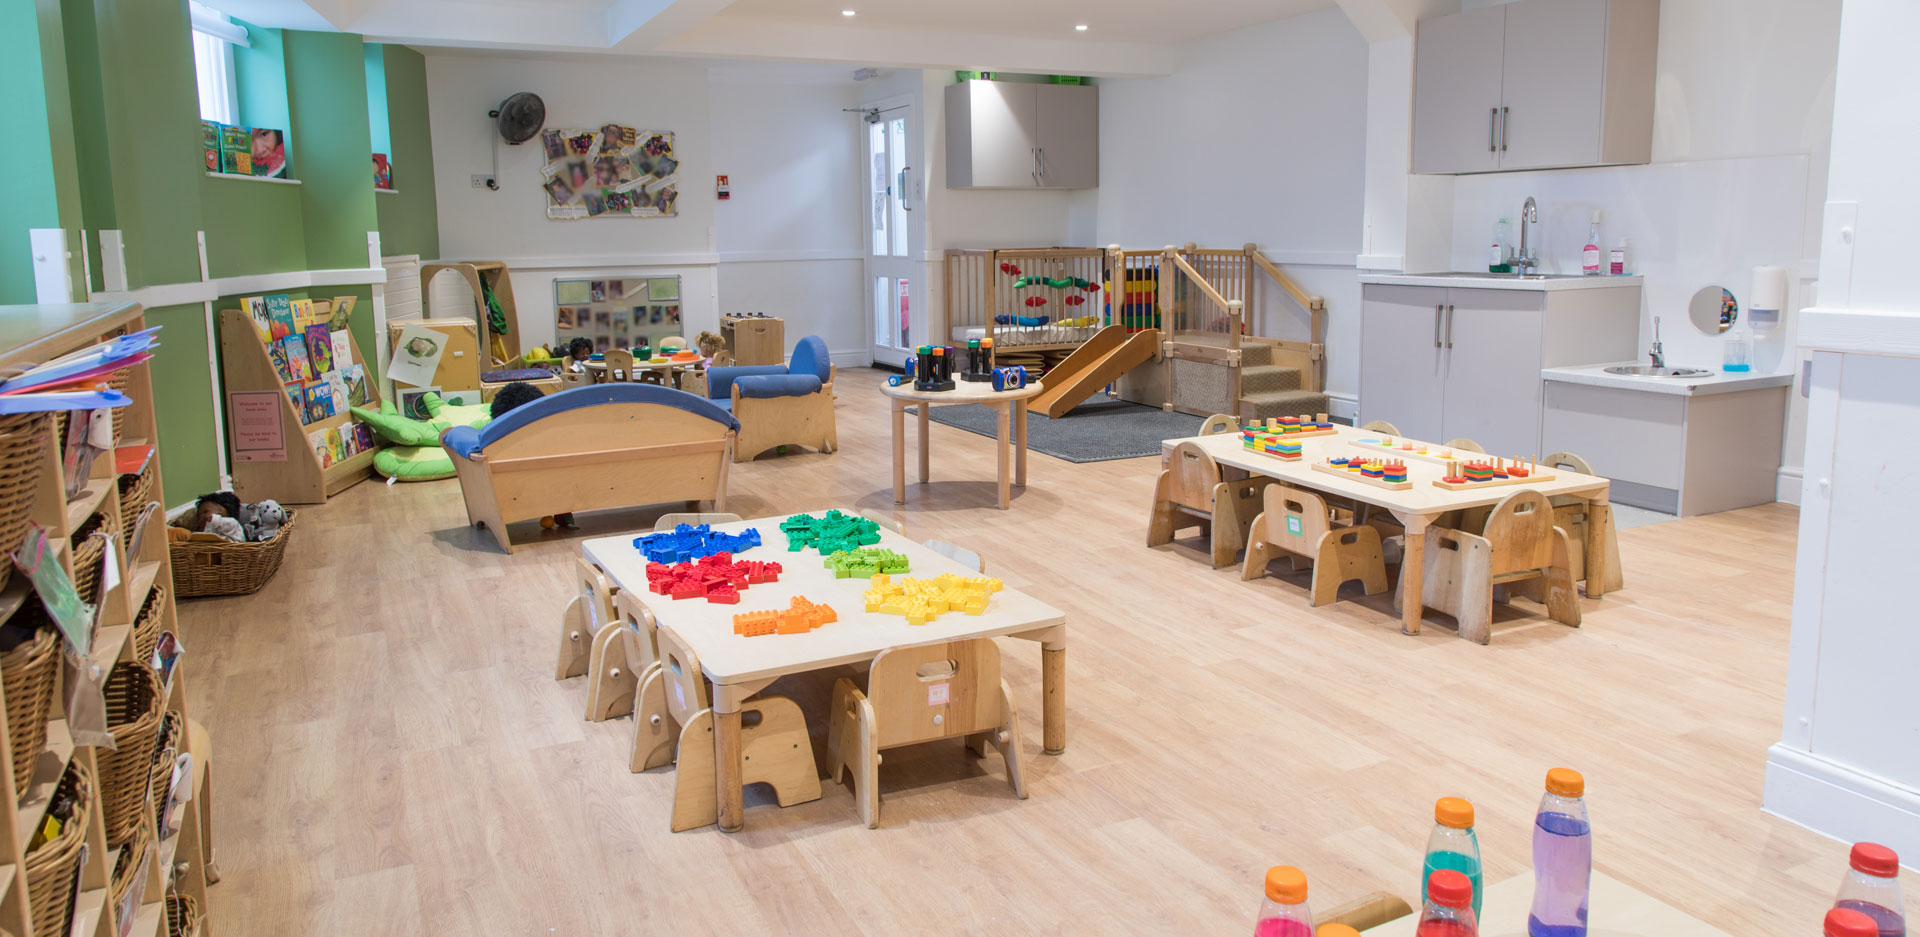 West Dulwich Day Nursery and Preschool